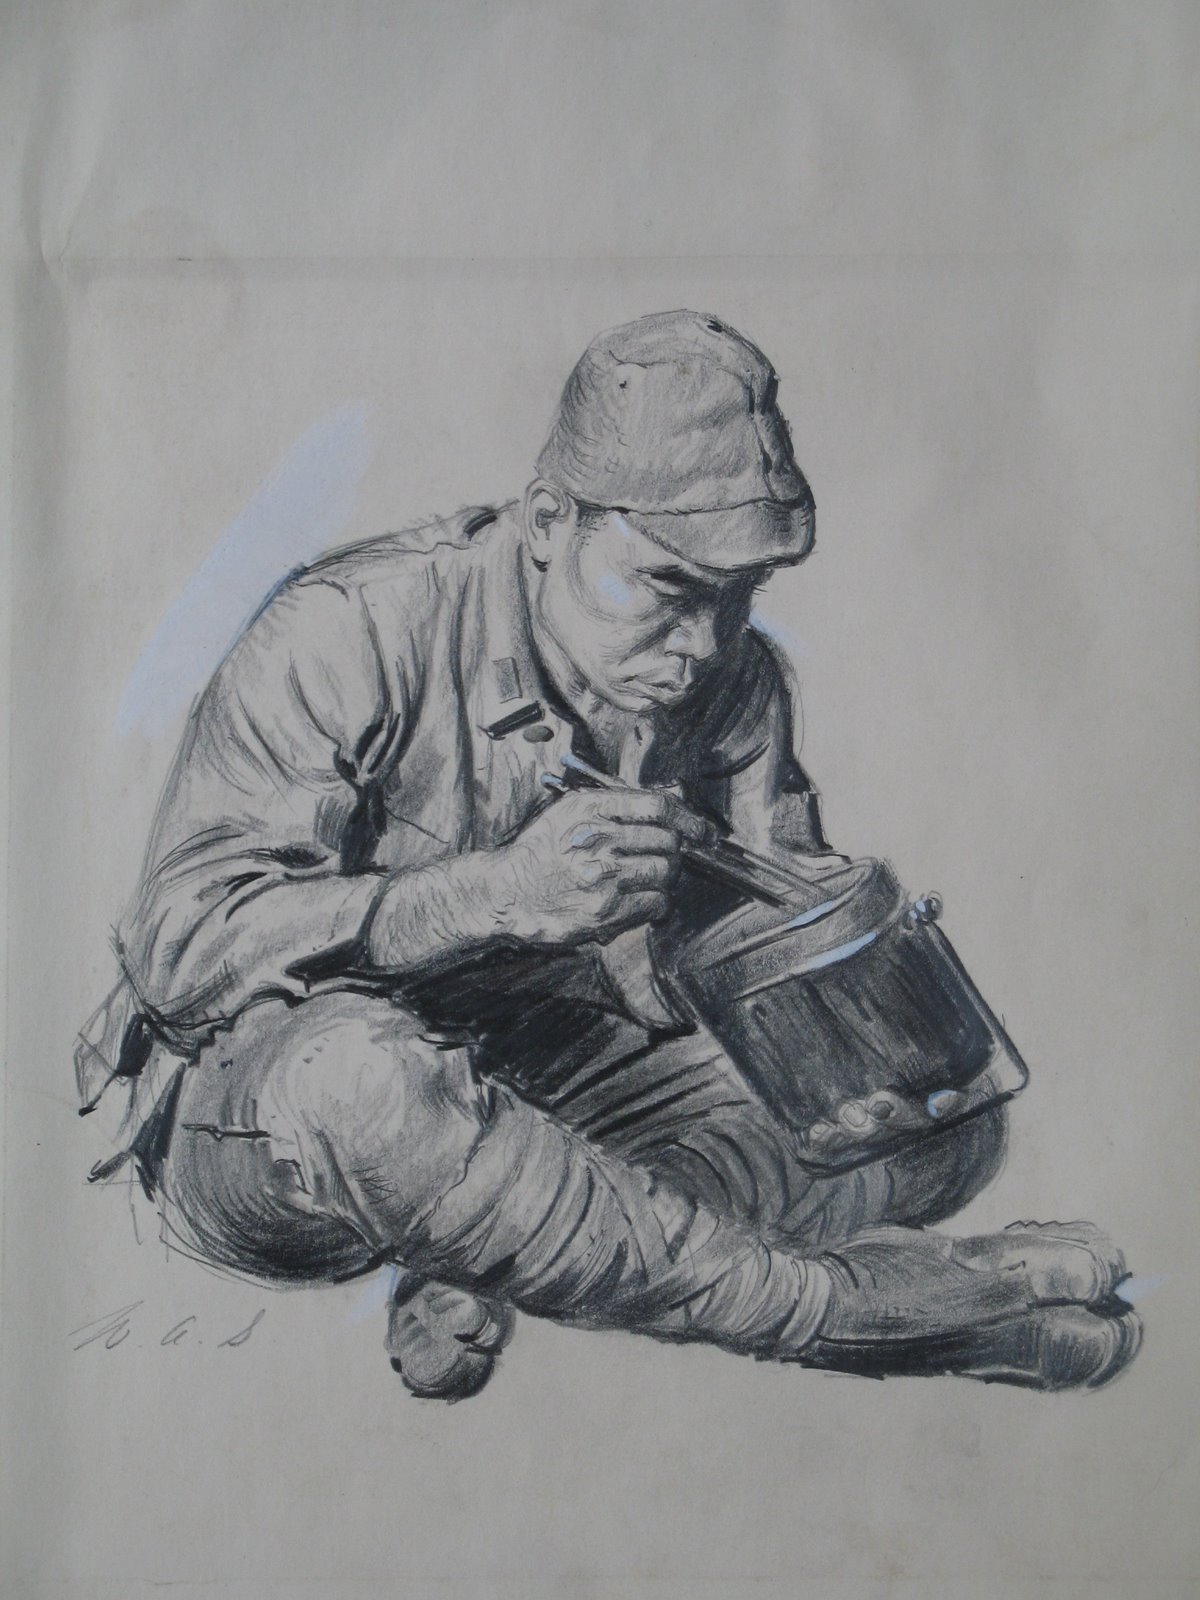 modern soldier drawings